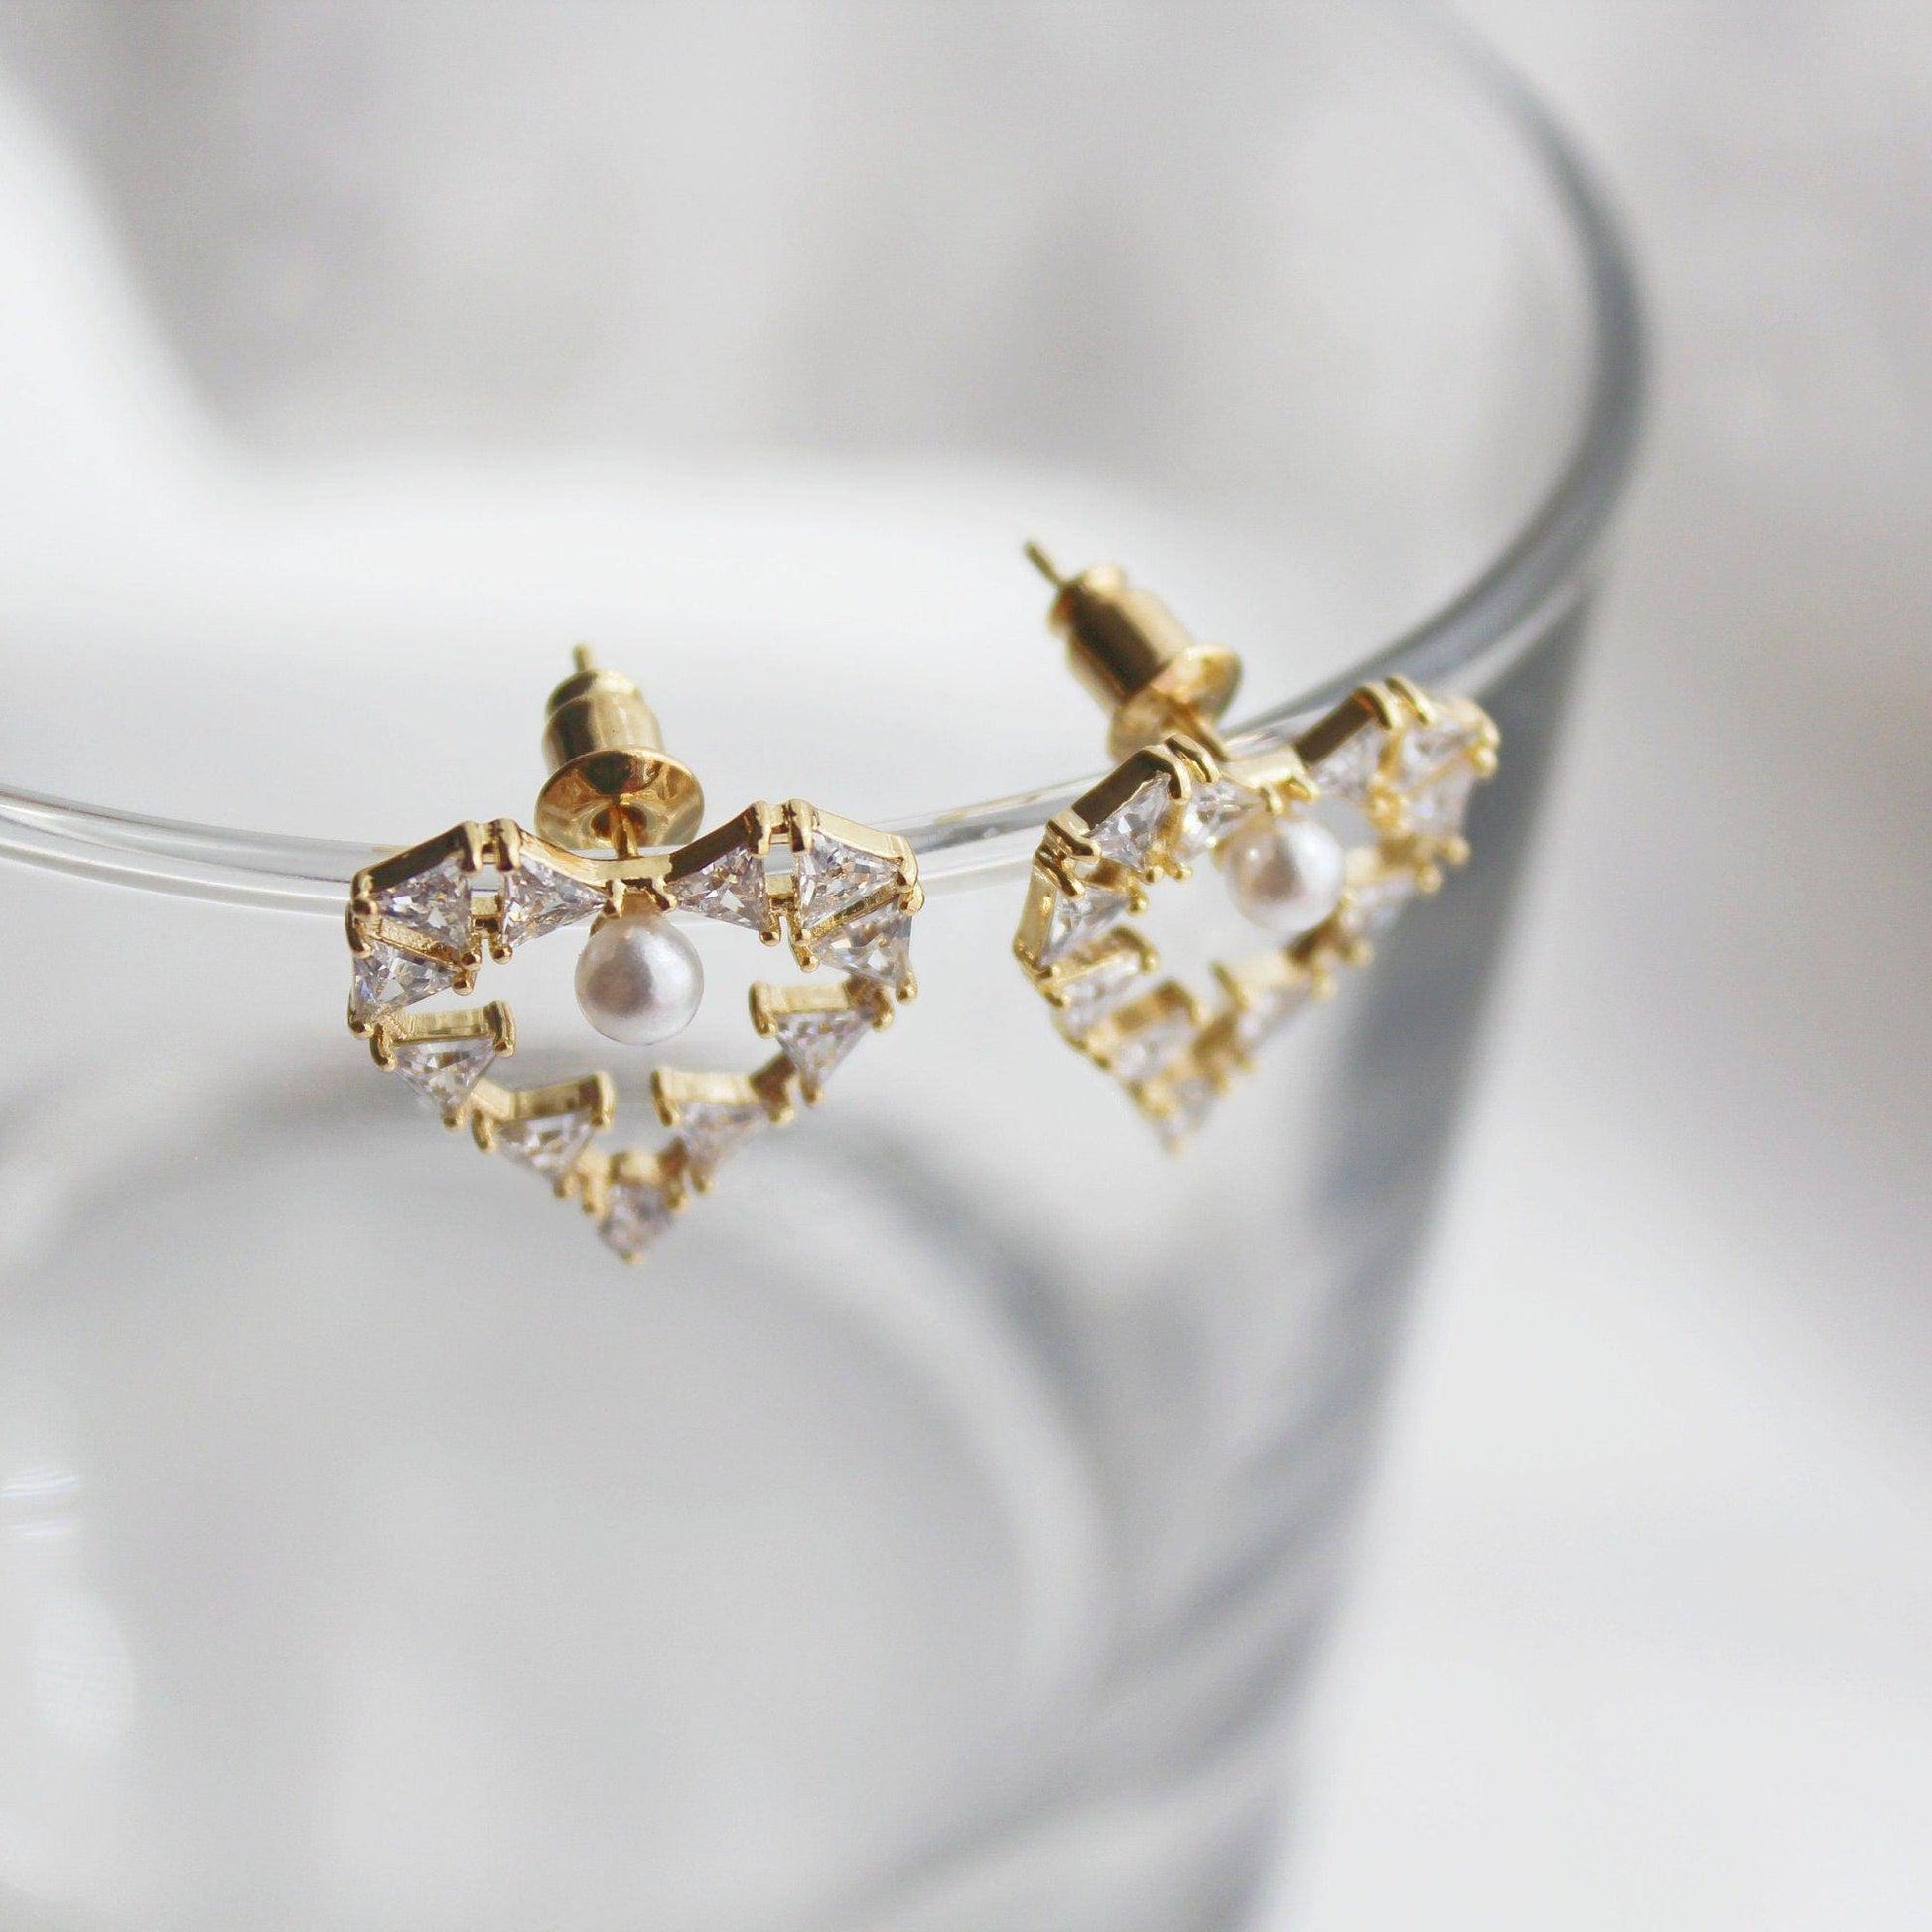 Pearl in Heart Earrings - Triangle Crystals in Gold Heart Earrings-Ninaouity